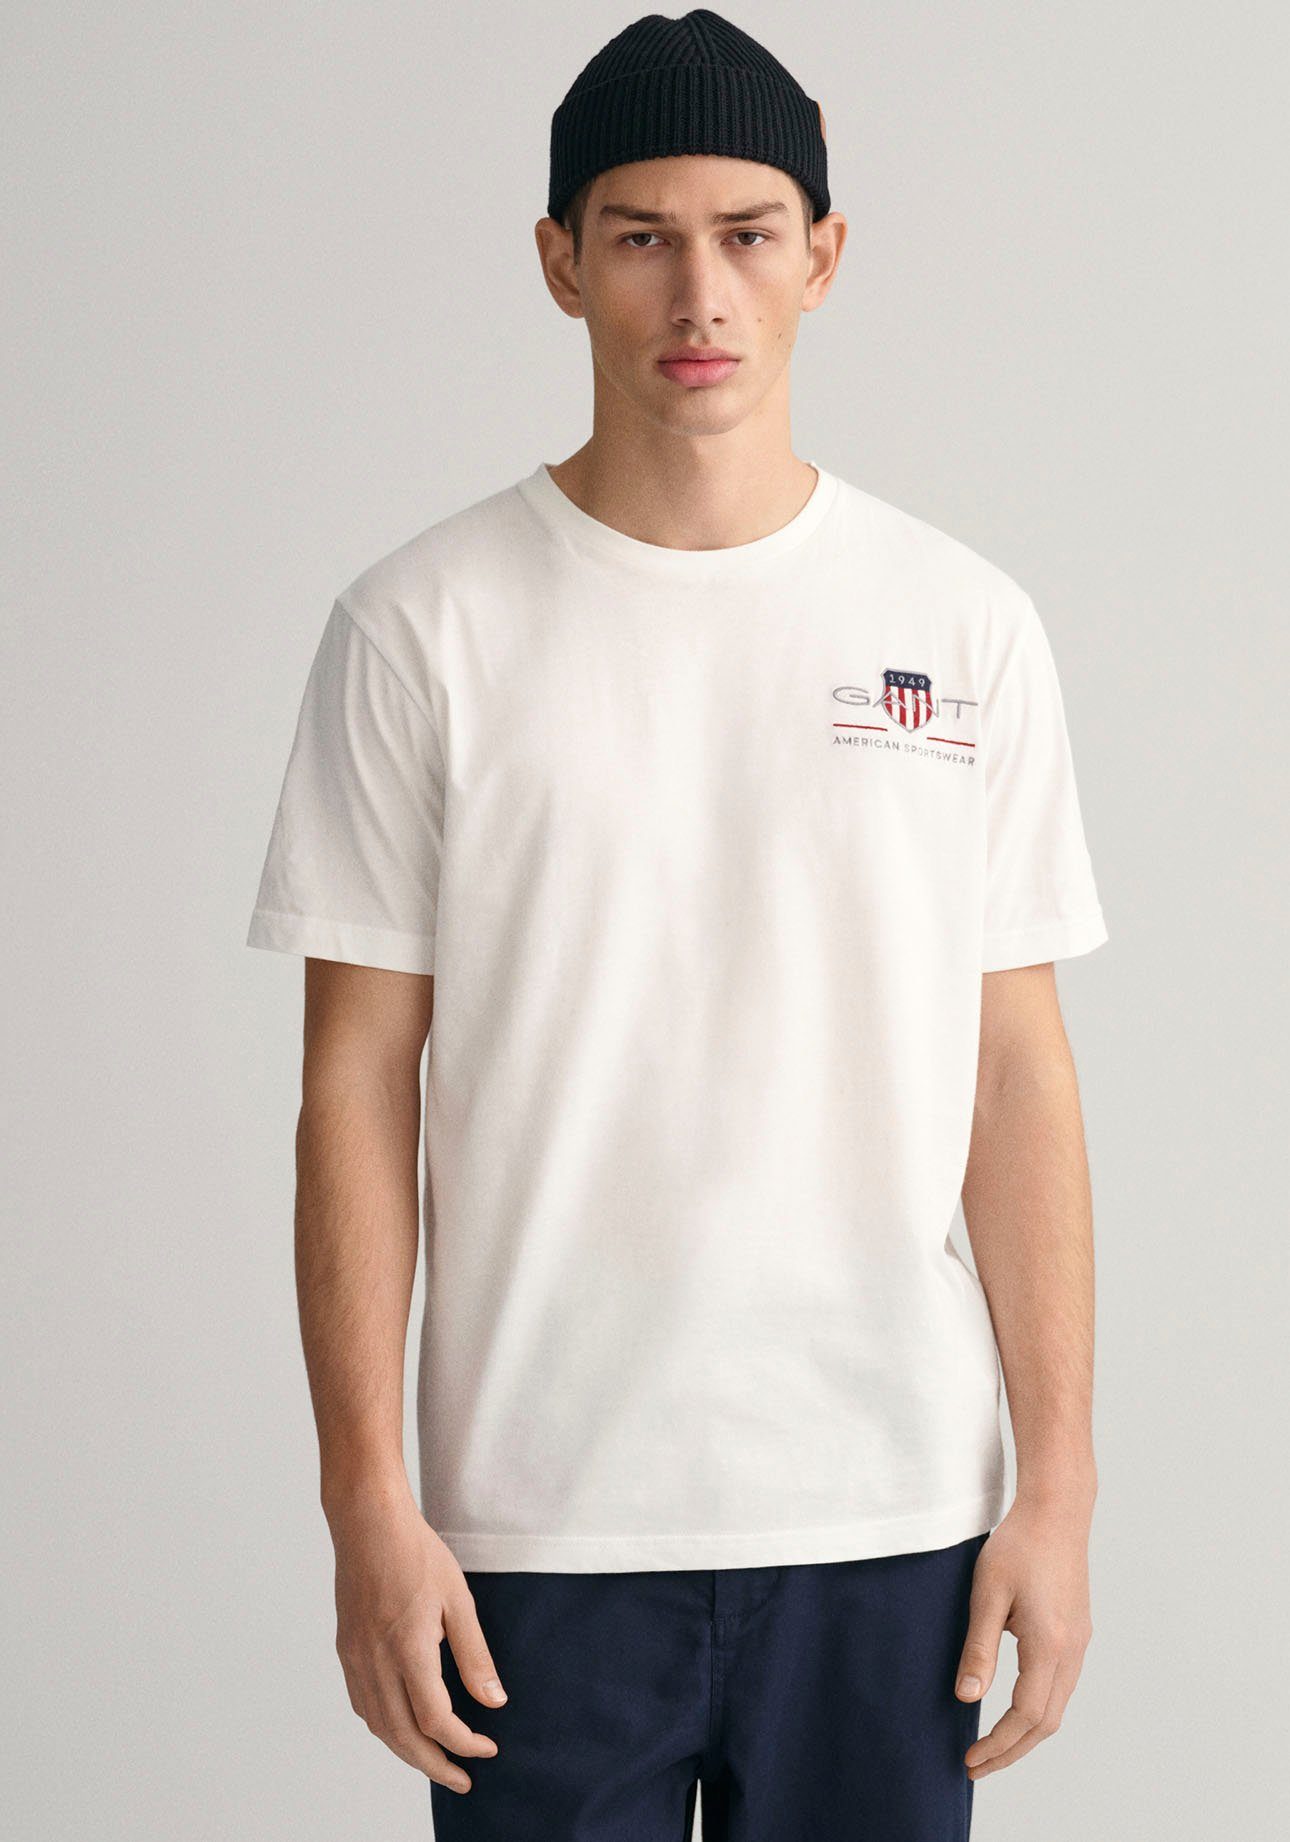 von white Archiv SHIELD den Gant ARCHIVE 1980er-Jahren REG dem aus SS T-Shirt EMB T-SHIRT inspiriert